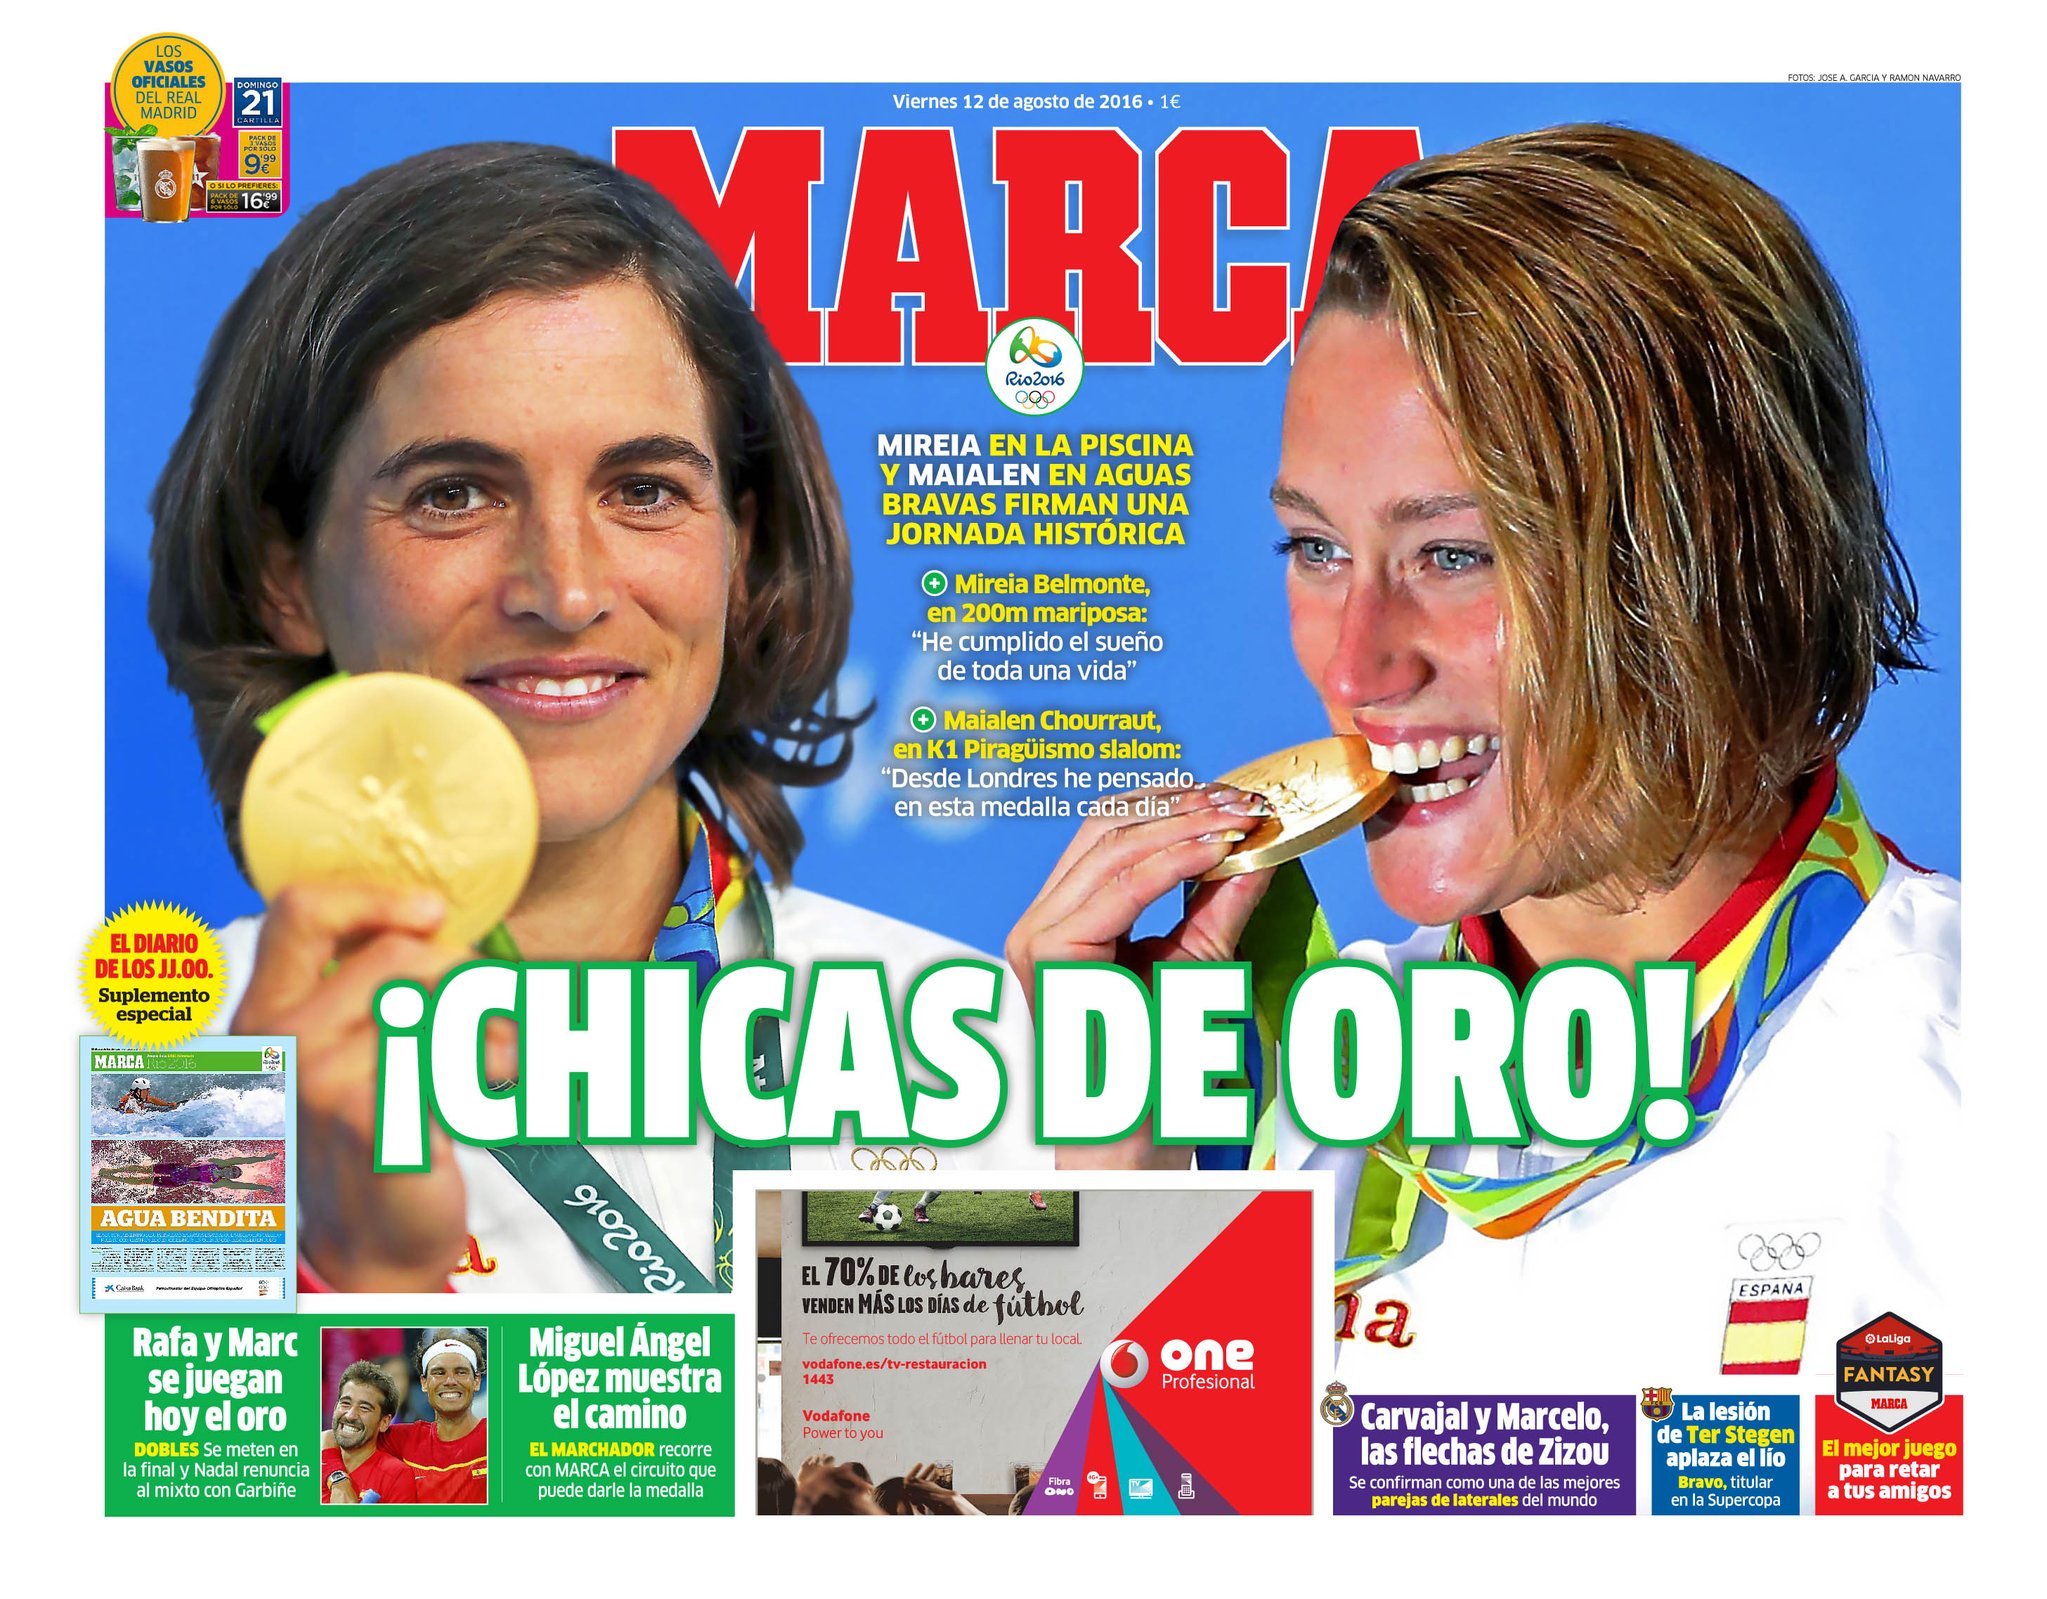 maíz Radar Ruidoso Juegos Olímpicos Río 2016: Las chicas de oro nos alegran los Juegos |  Marca.com